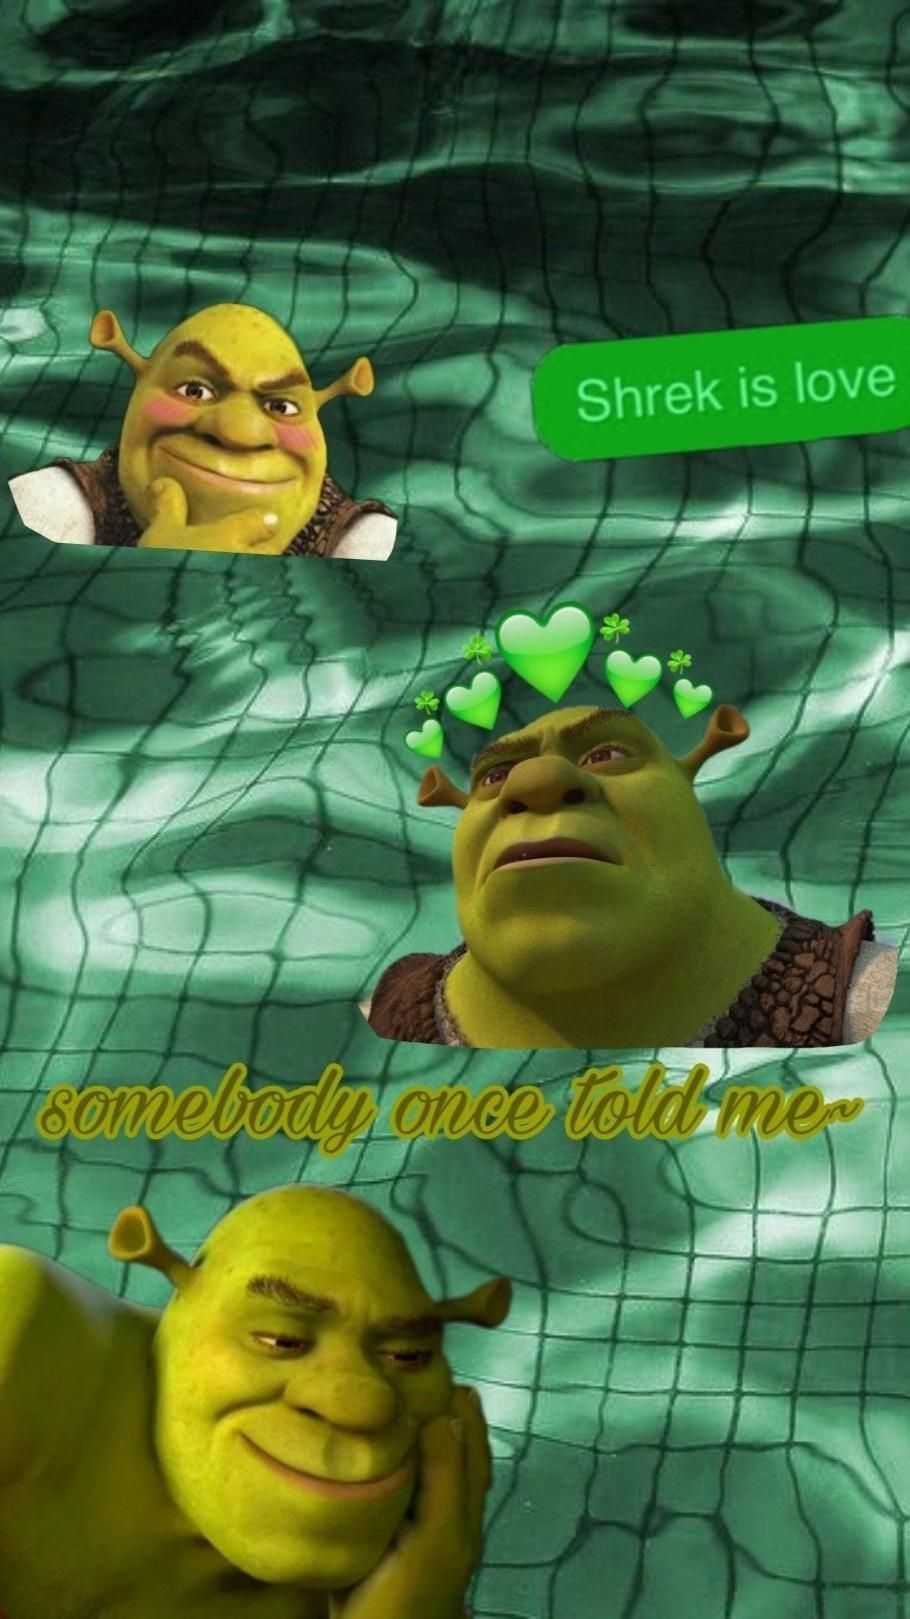 Aesthetic shreck wallpaper <33333333. Shrek, Shrek character, Shrek memes - Shrek